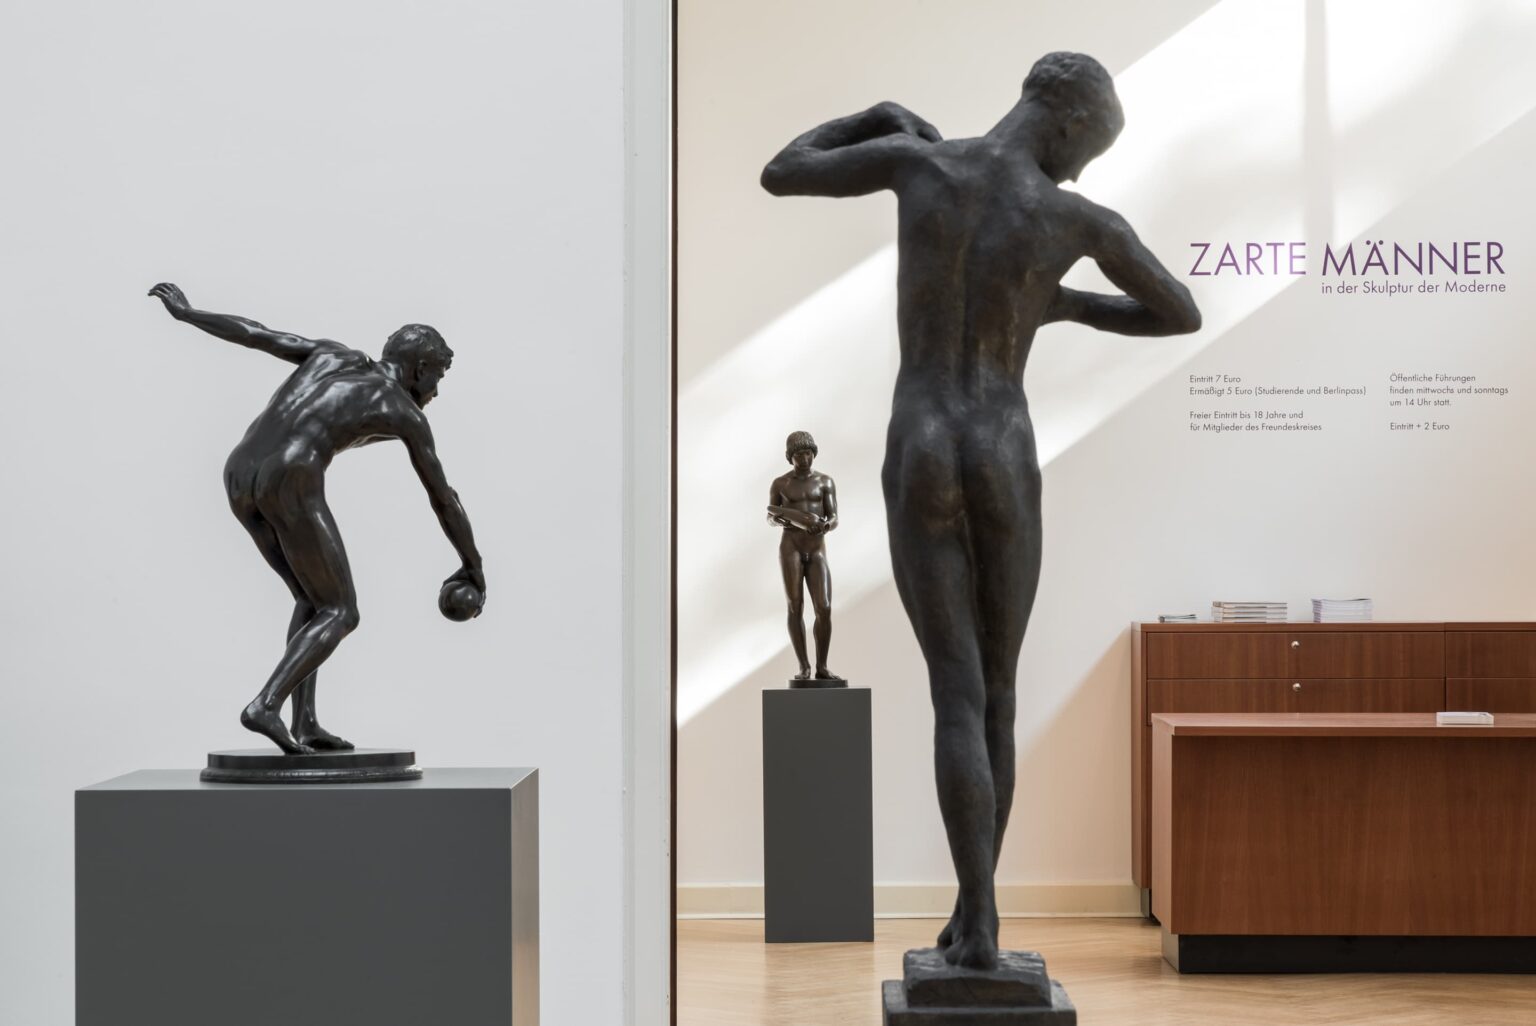 Ausstellungsansicht: Zarte Männer in der Skulptur der Moderne, Bildarchiv Georg Kolbe Museum, Enric Duch 2018